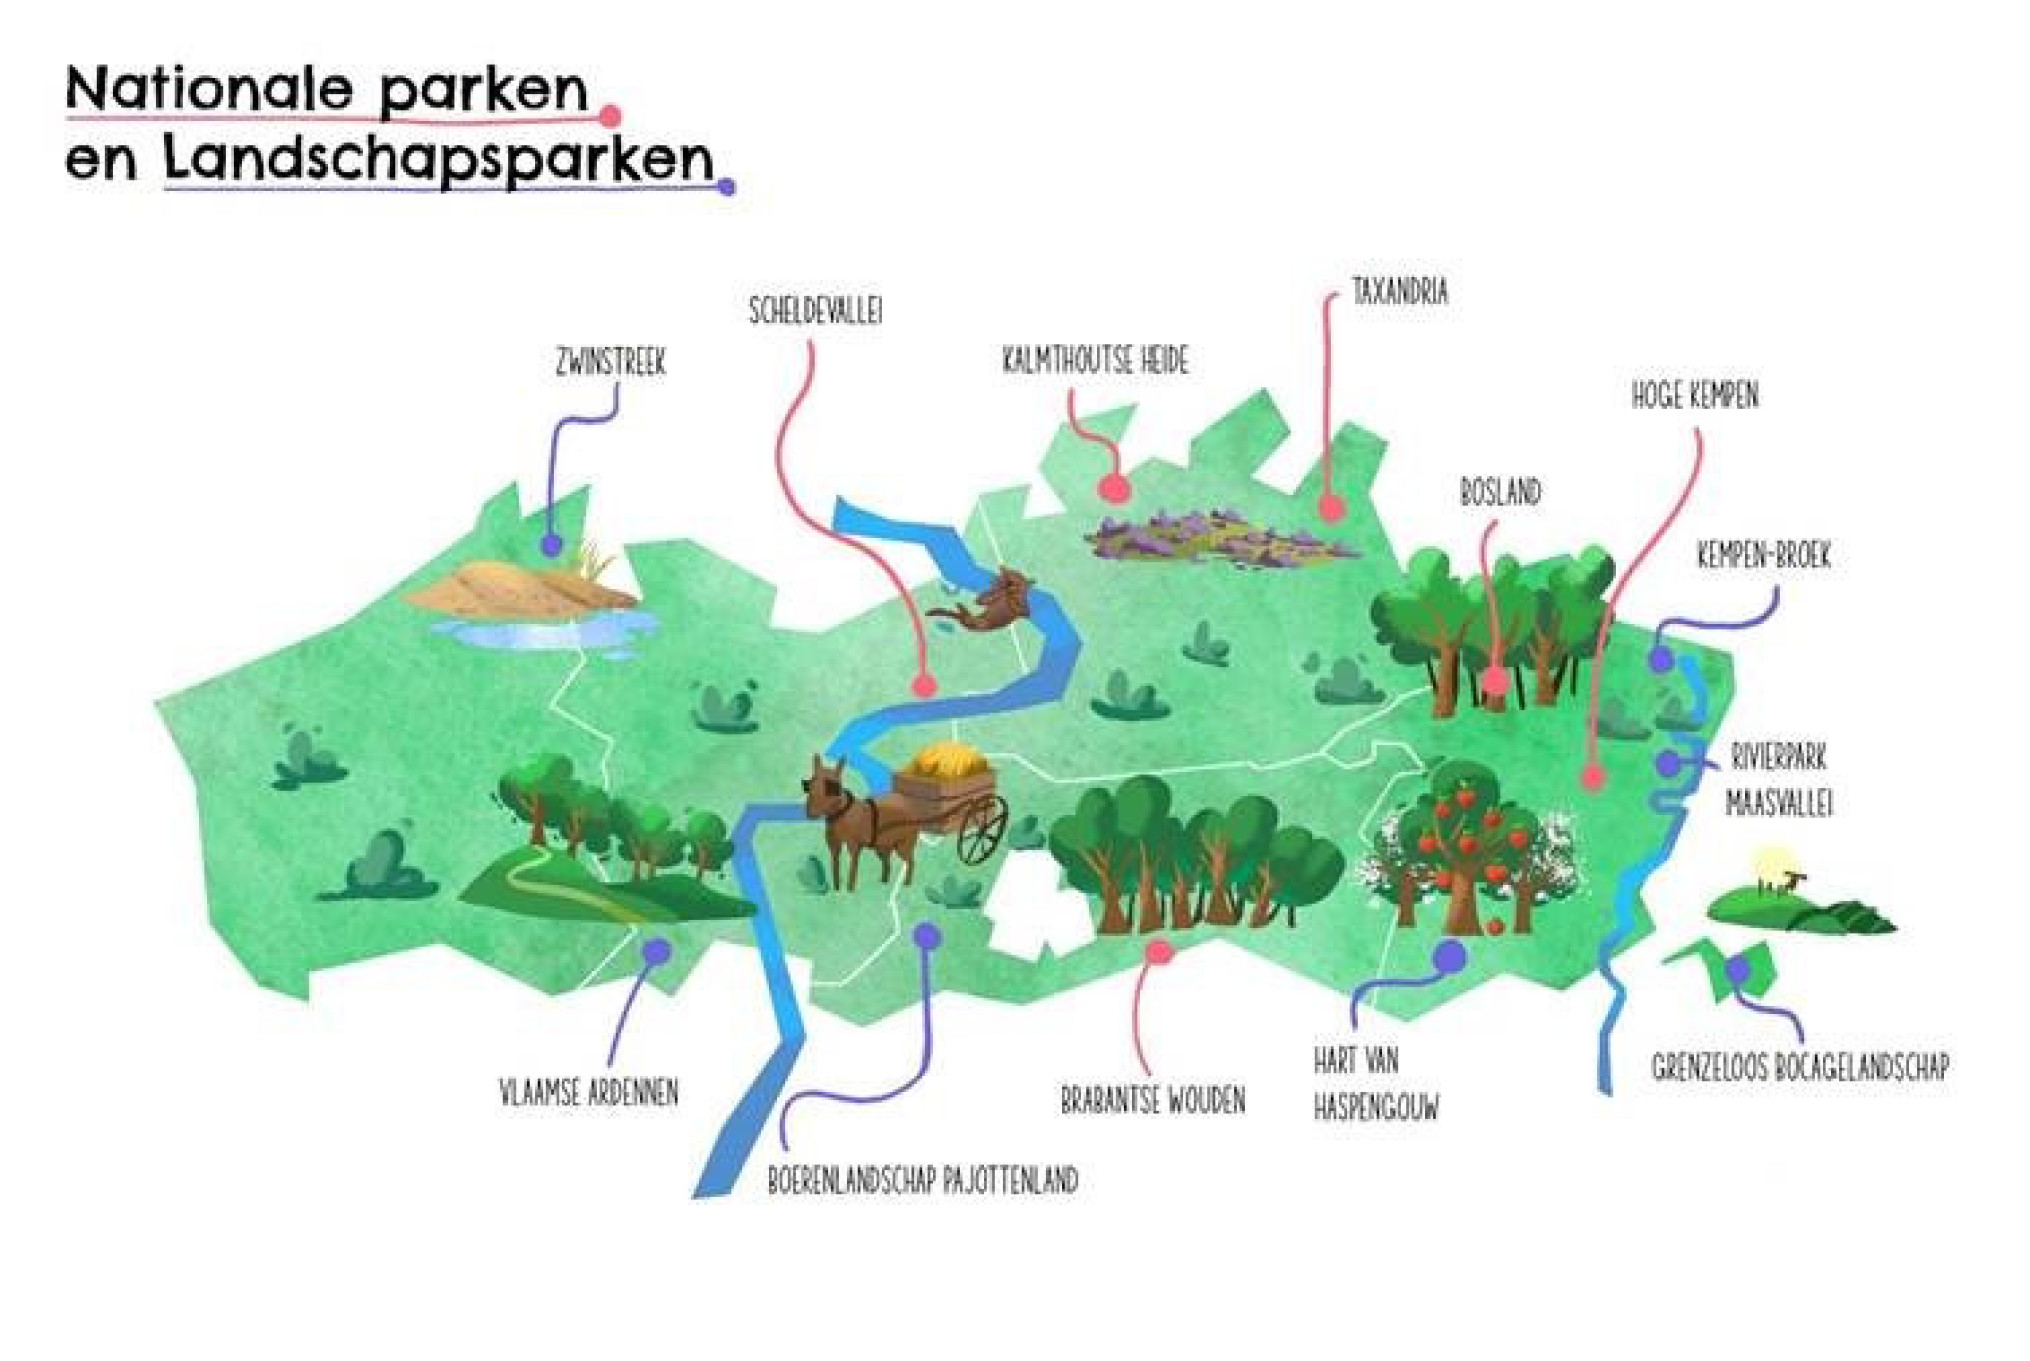 kaart nationale parken landschapsparken